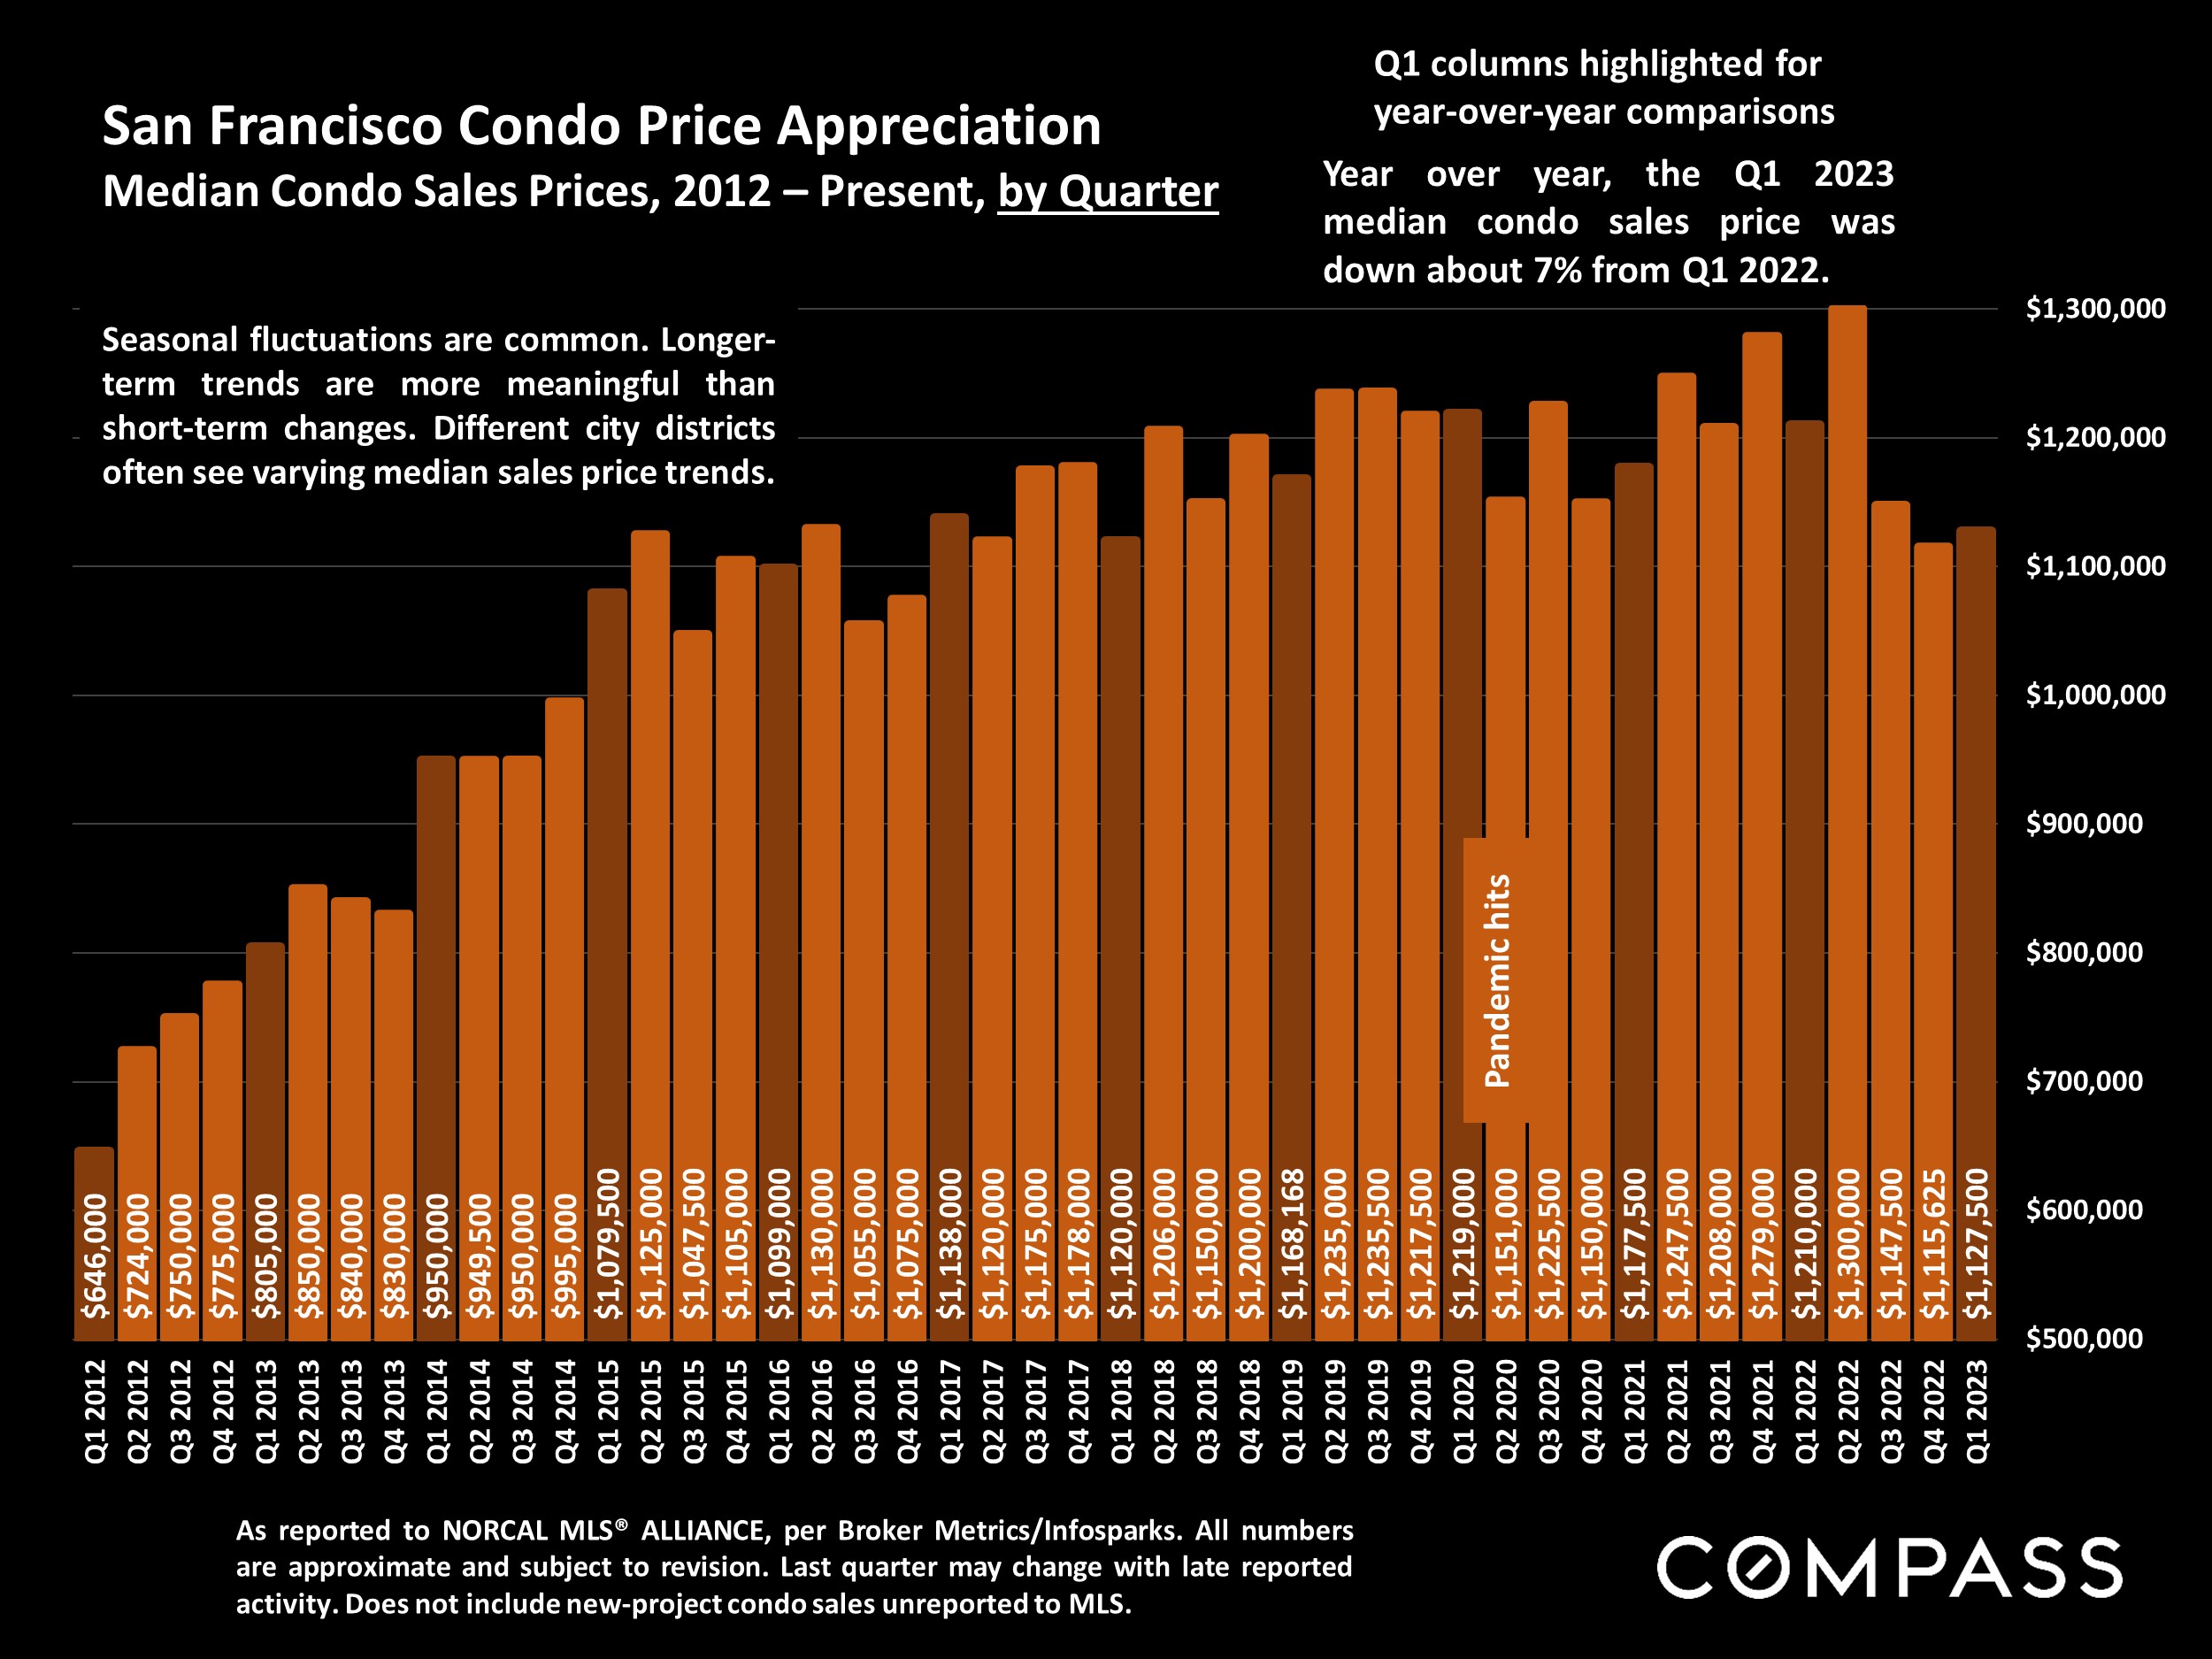 San Francisco Condo Price Appreciation. Median Condo Sales Prices, 2012 - Present, by Quarter